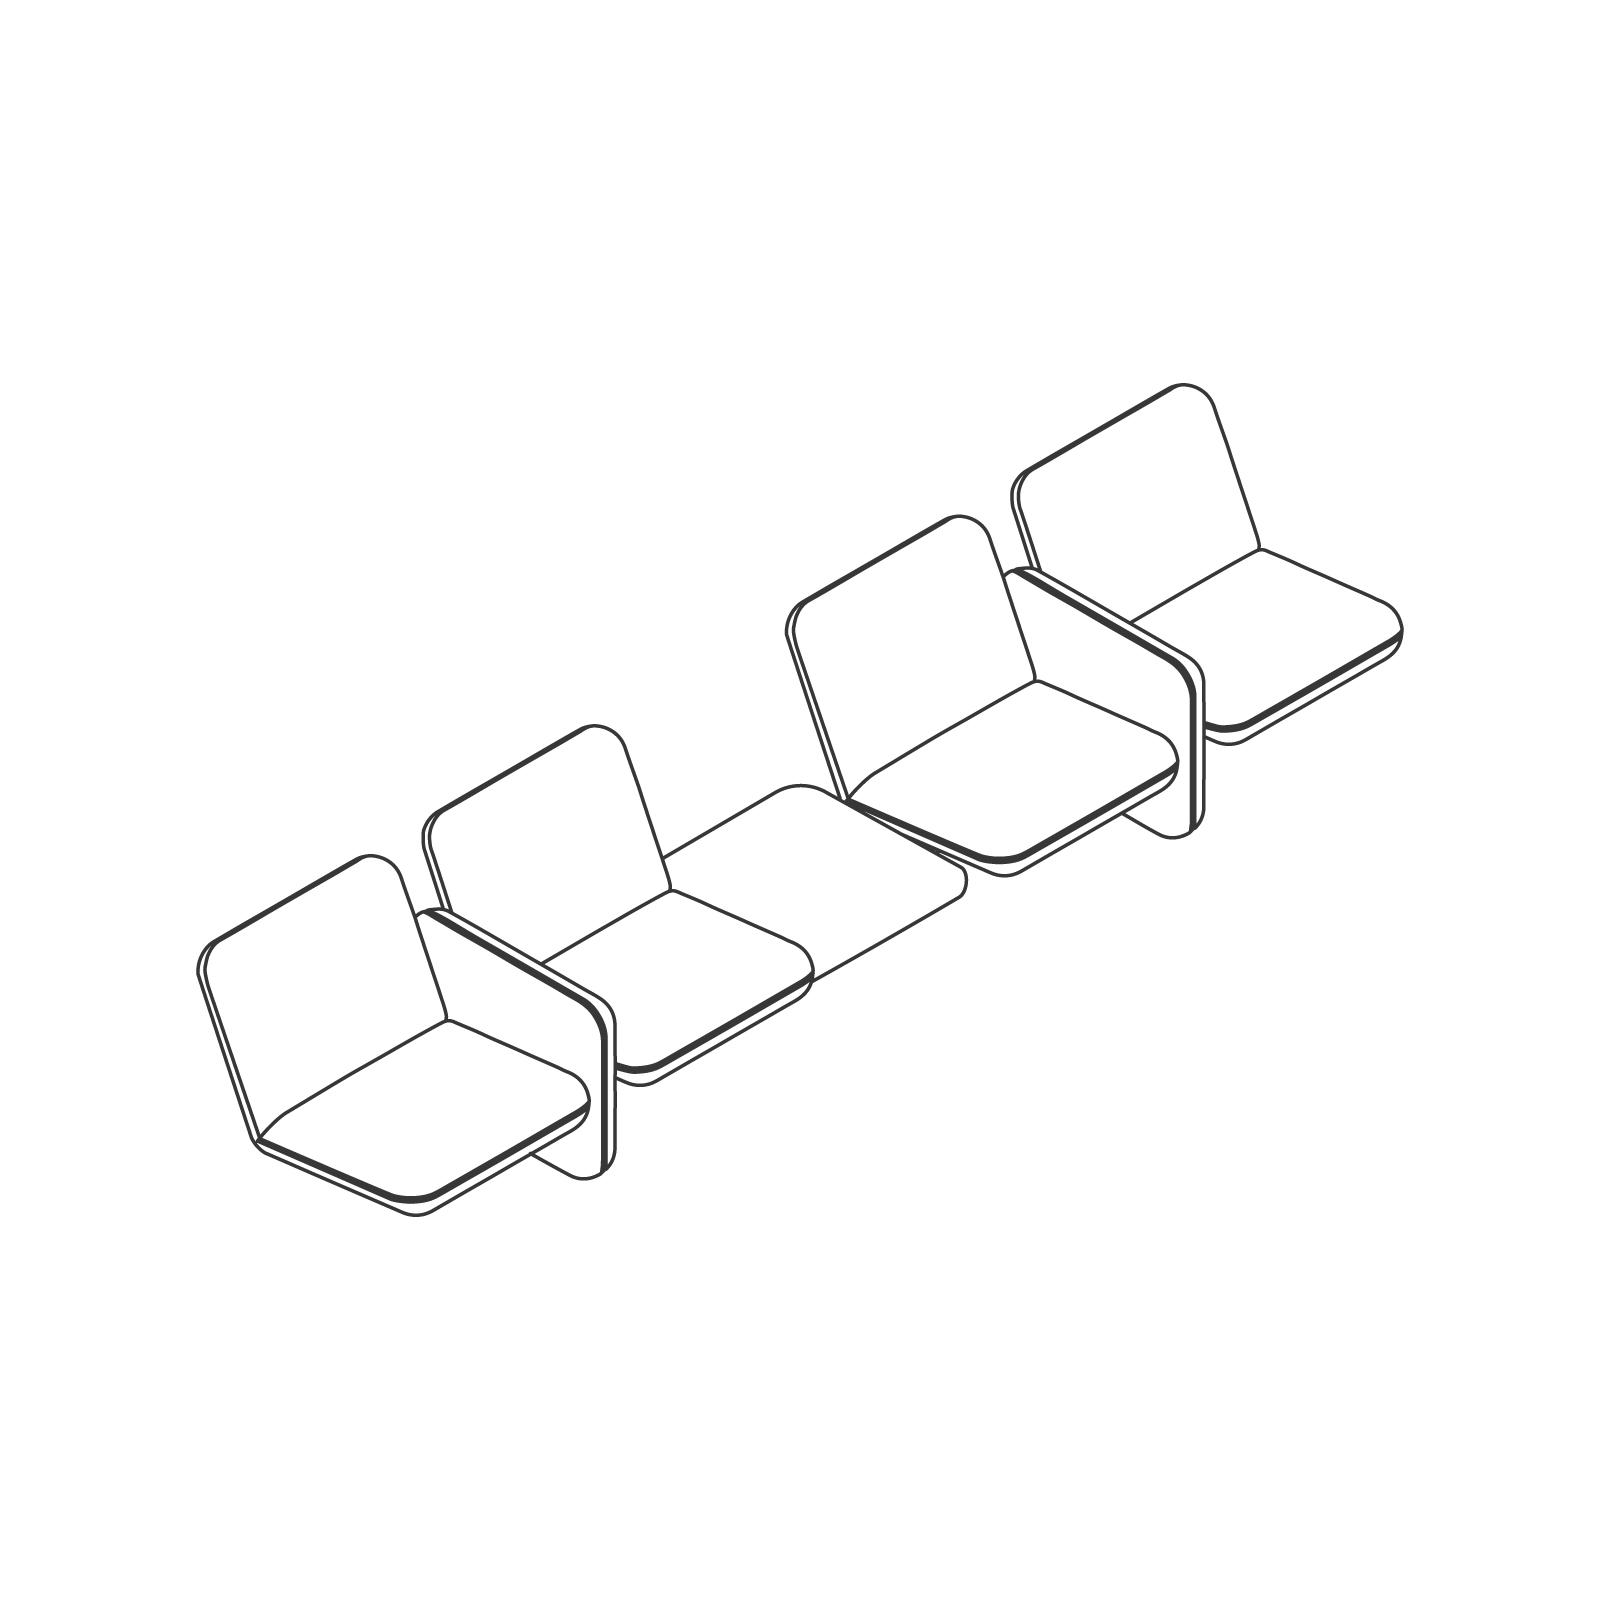 Dibujo en líneas - Conjunto de sofás modulares Wilkes – 2 asientos a la izquierda – Mesa – 2 asientos a la derecha